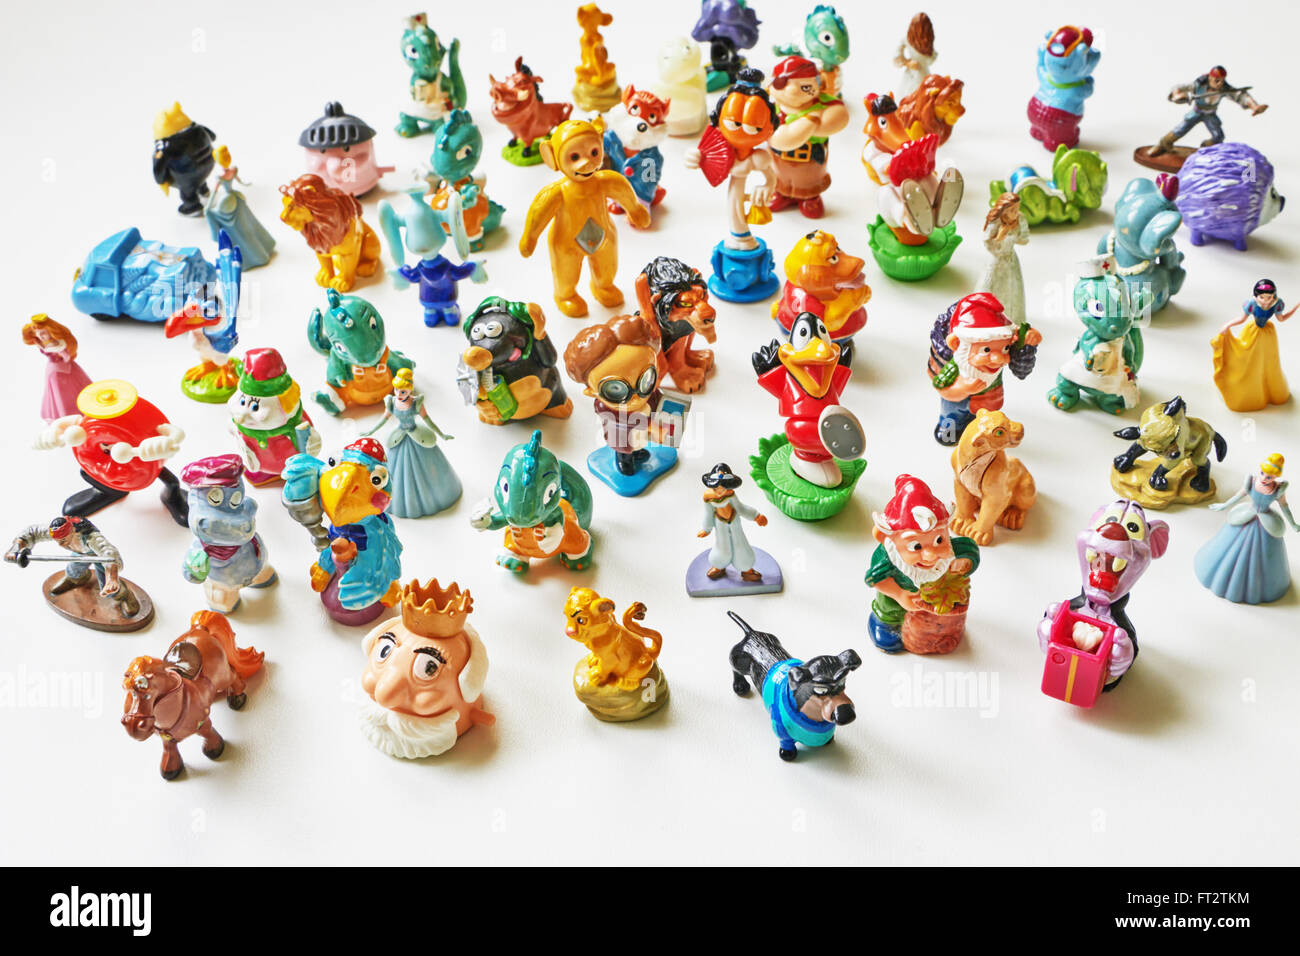 Grande collezione di giocattoli di piccole dimensioni e giocattoli della Kinder sorpresa Foto Stock